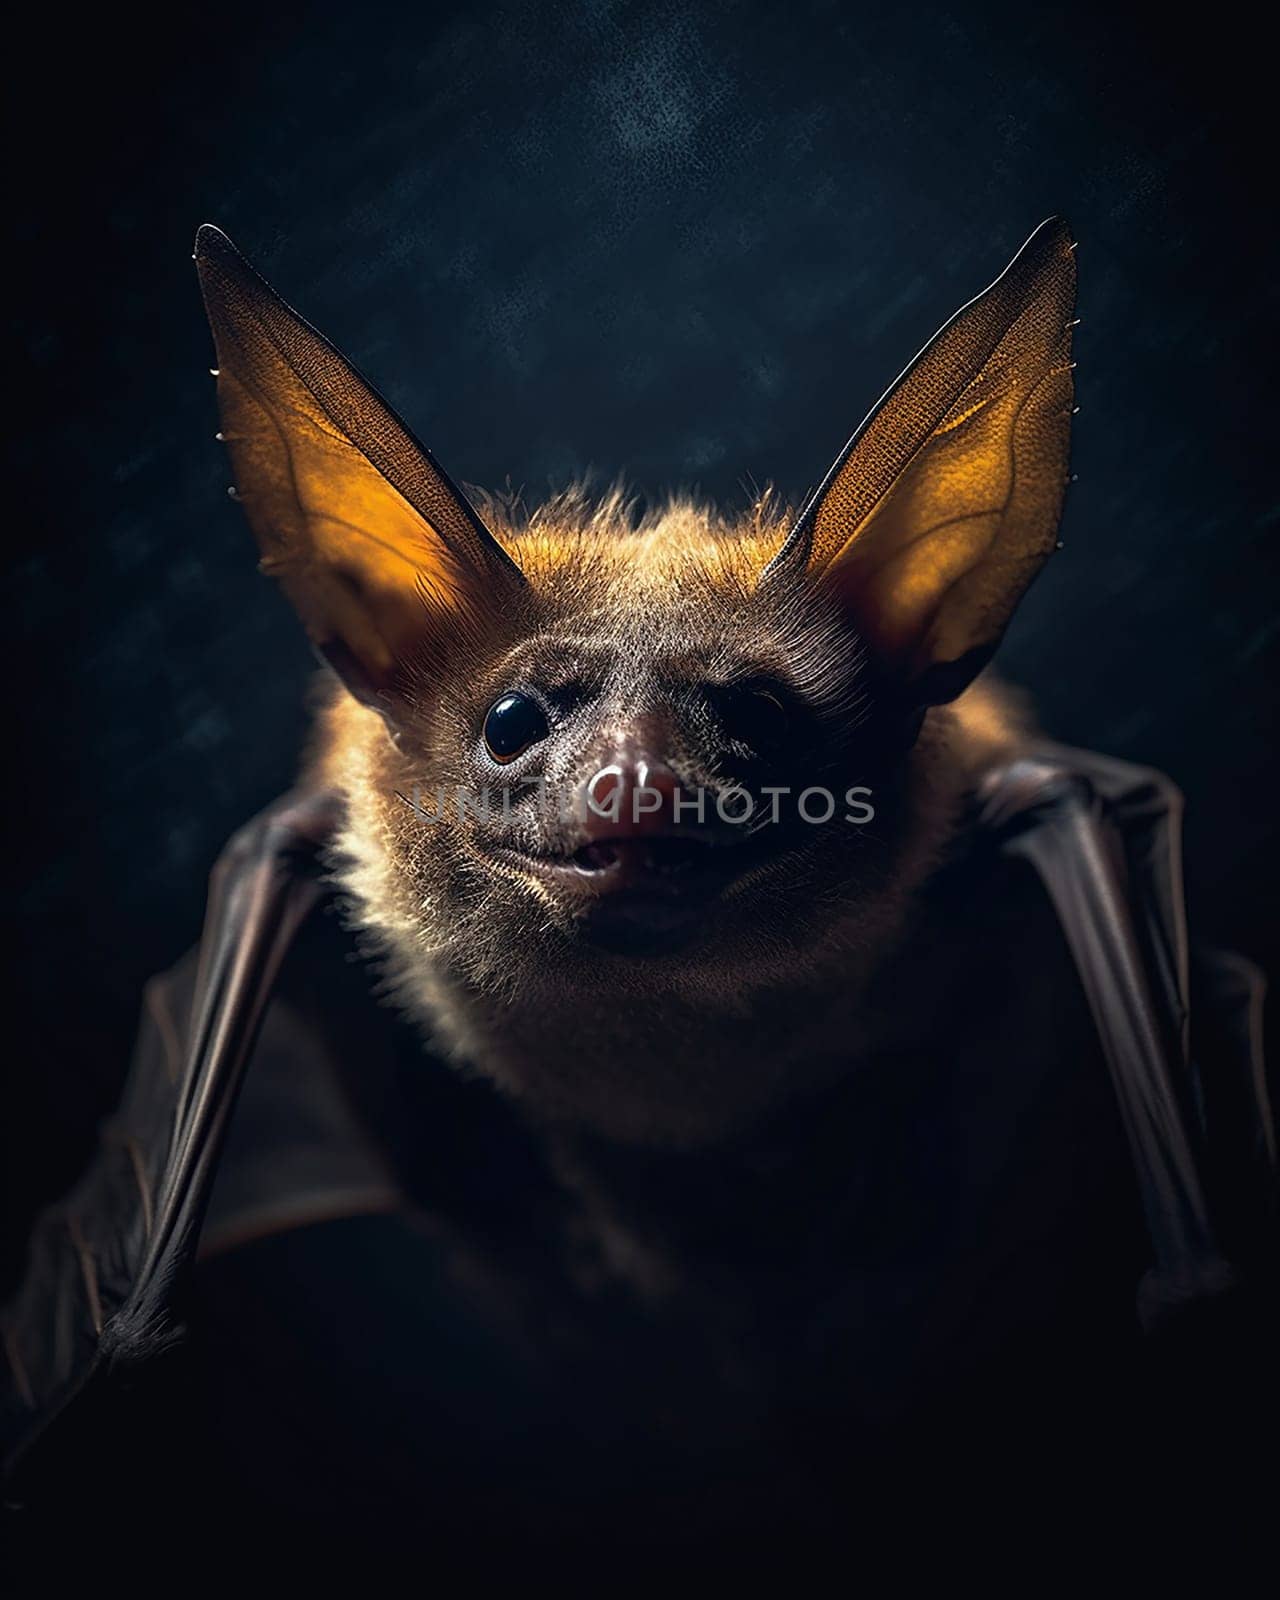 Close-up of a bat against a dark background